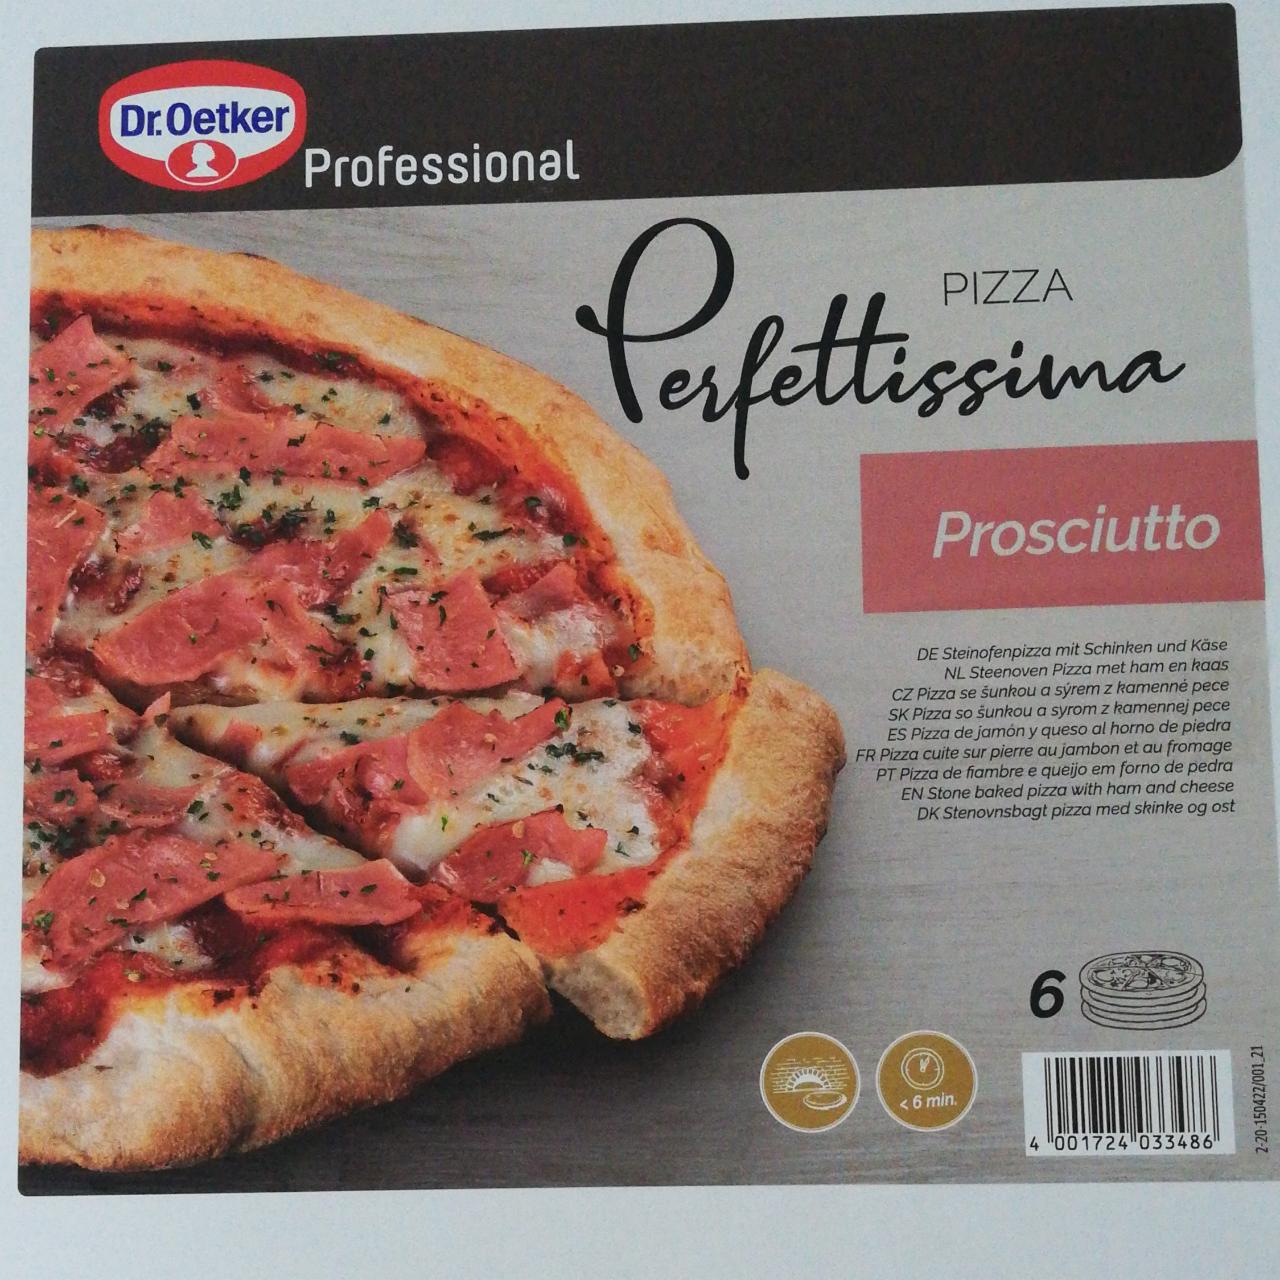 Fotografie - Pizza Perfettissima Prosciutto Dr.Oetker Professional